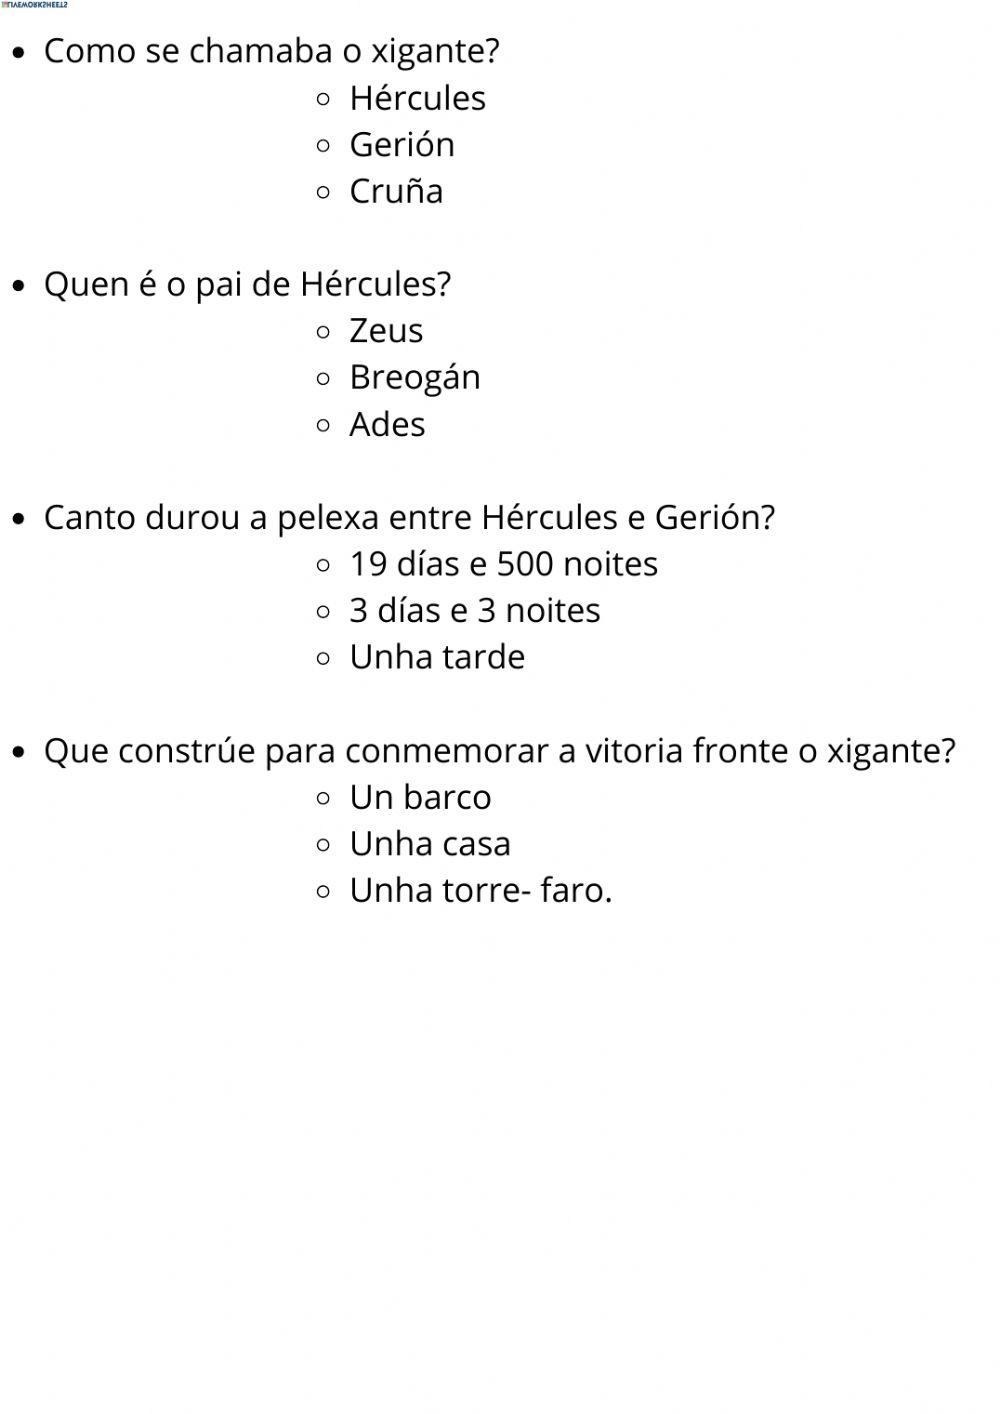 Lenda de Hércules e Gerión